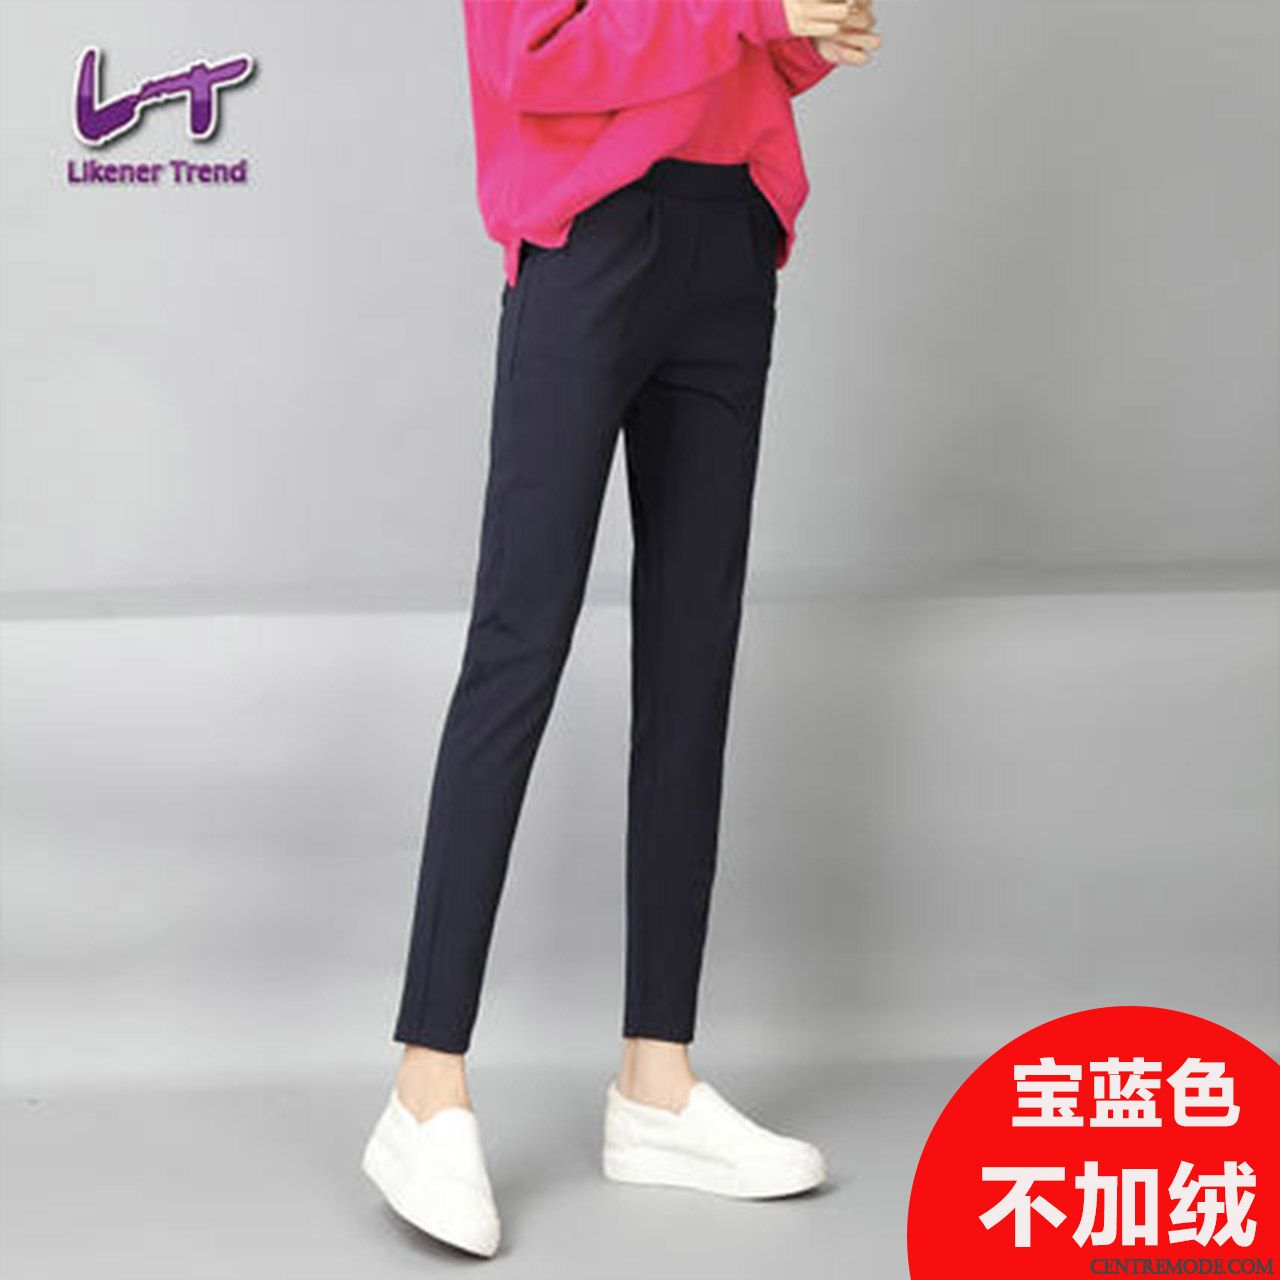 Pantalons Rouges Femme Blanc Violet, Pantalon Noir Femme Habillé En Ligne